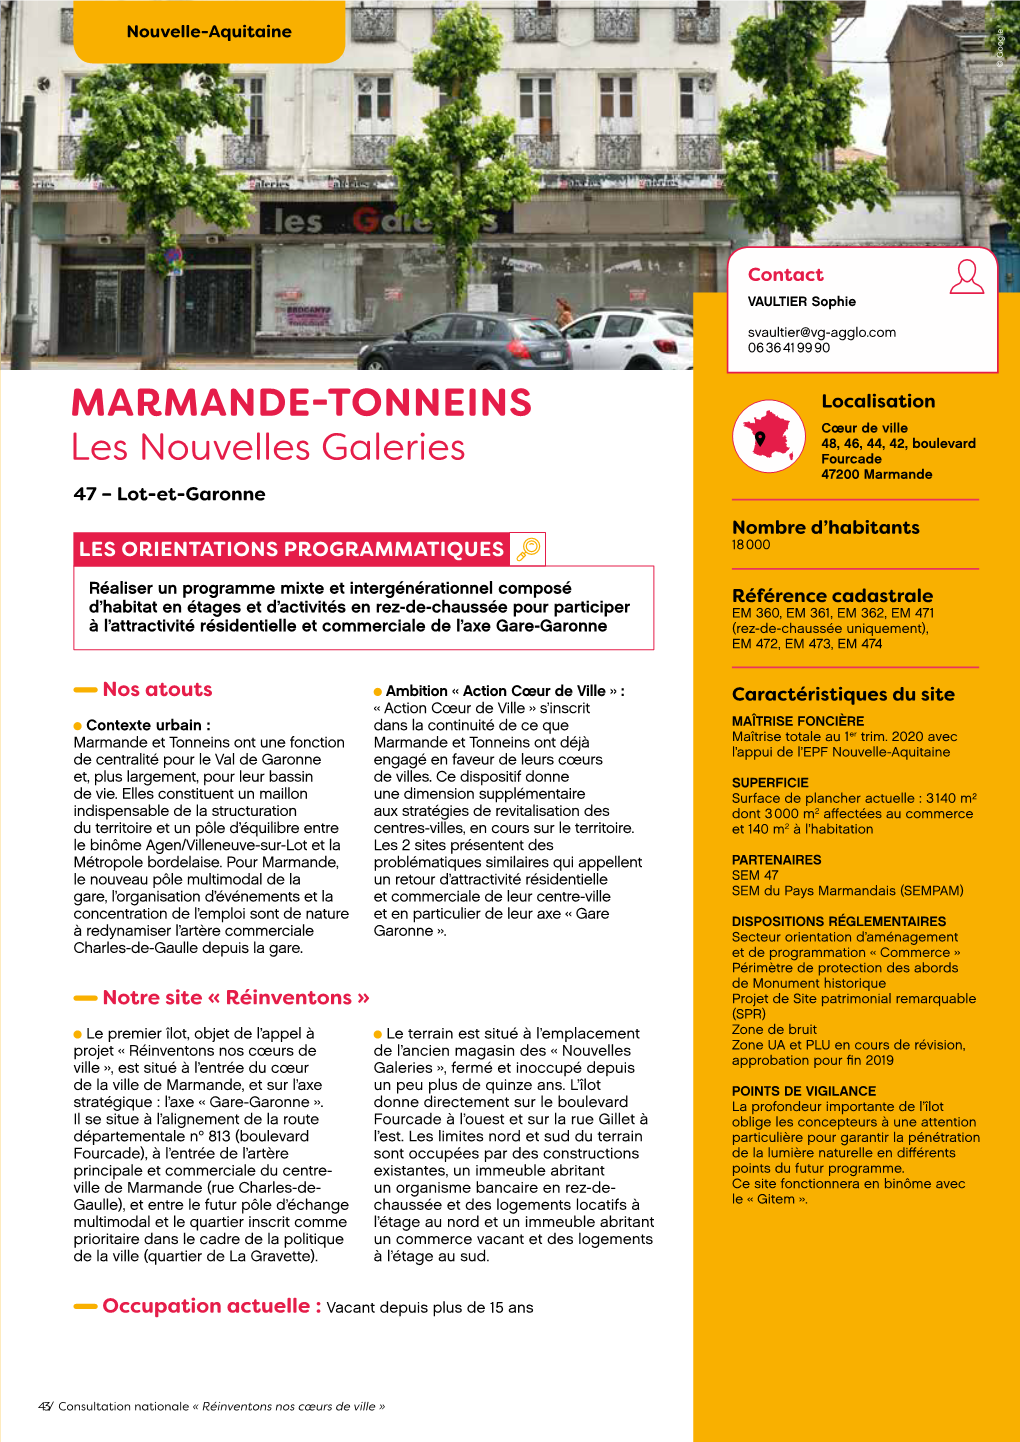 MARMANDE-TONNEINS Les Nouvelles Galeries